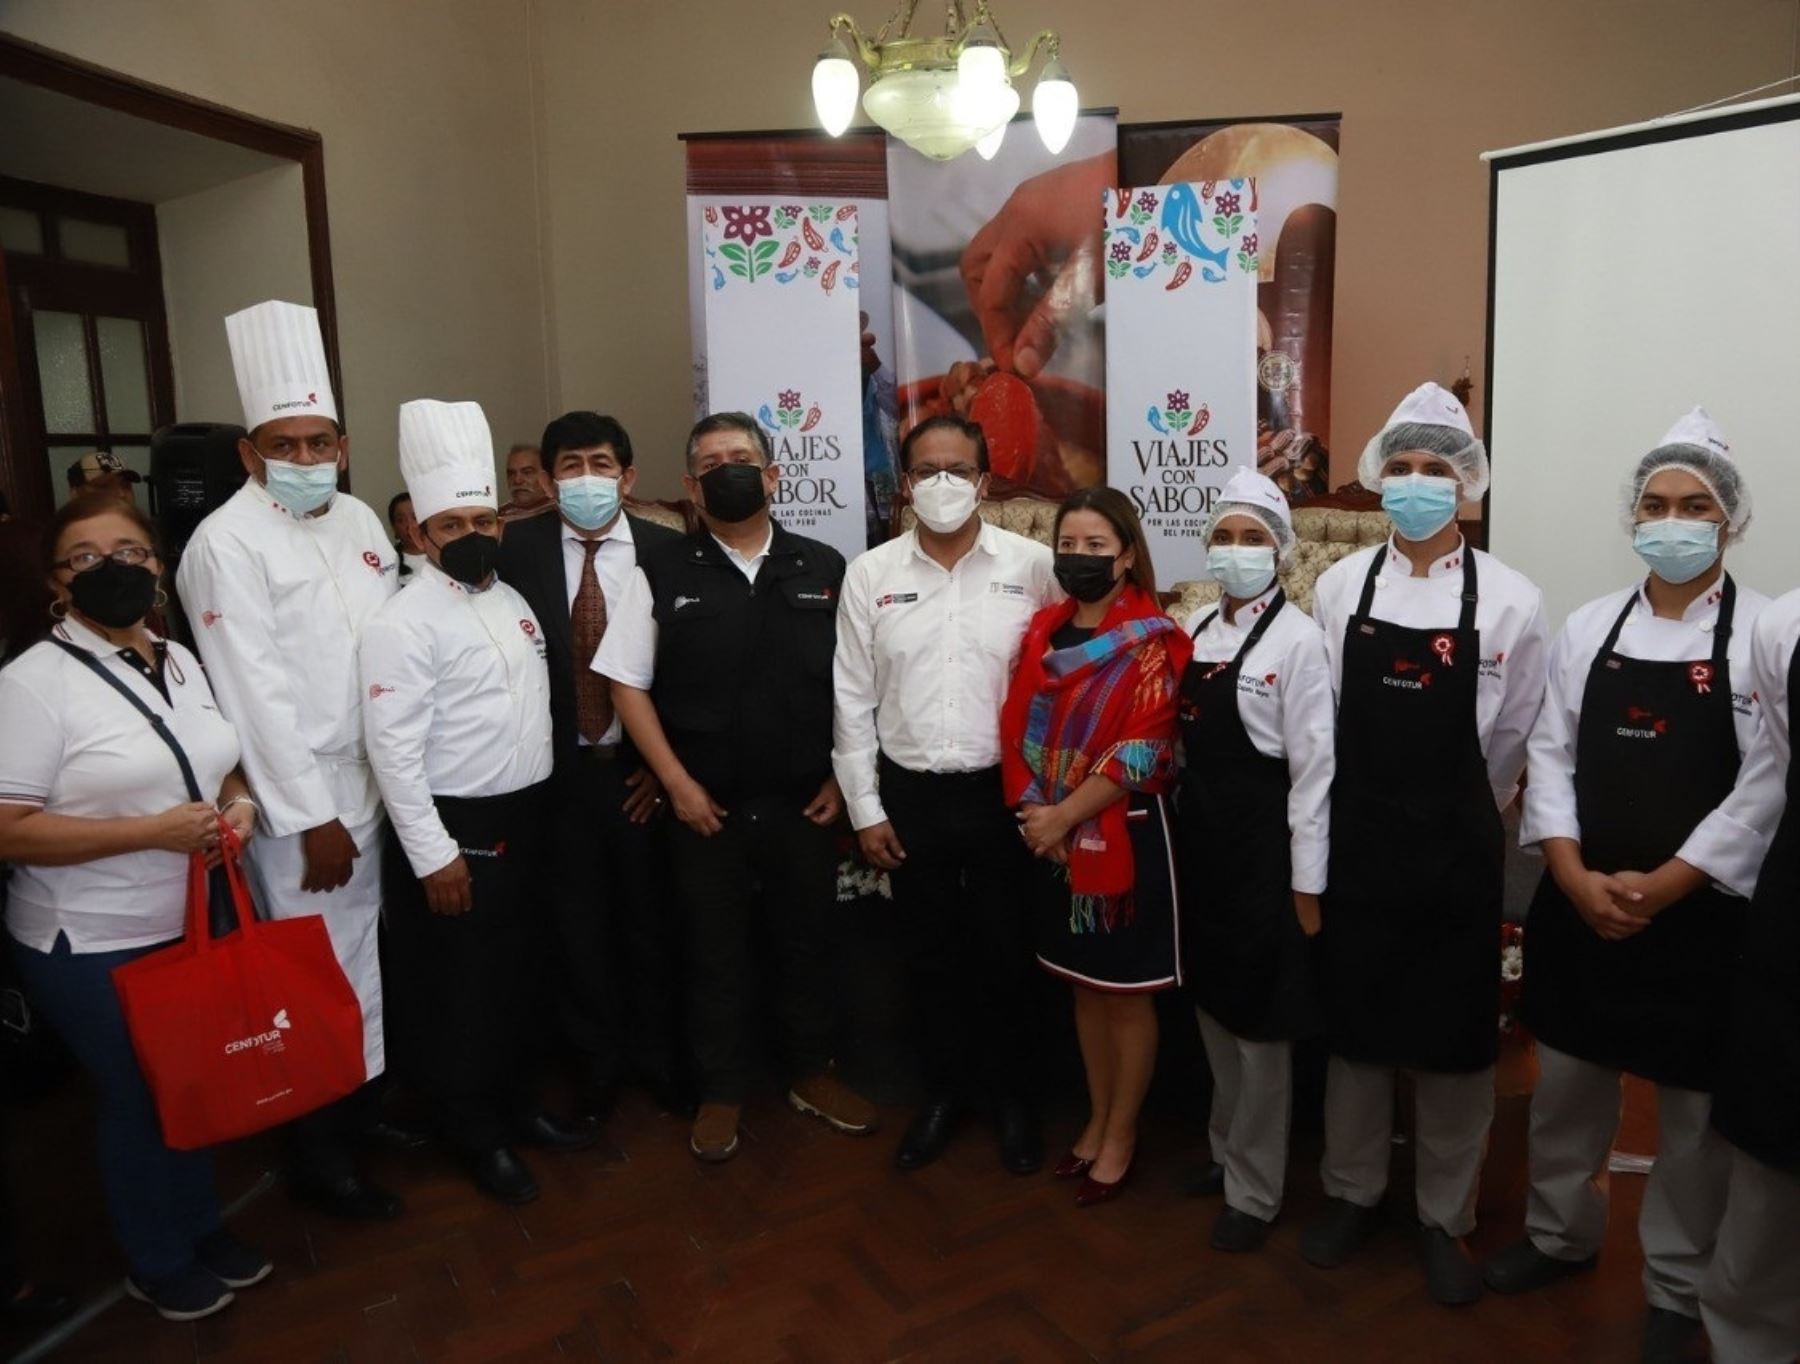 Regiones del sur del país mostrarán su mejor oferta gastronómica en el "Encuentro de viajes con sabor", una actividad que se realizará este fin de semana en la ciudad de Arequipa.